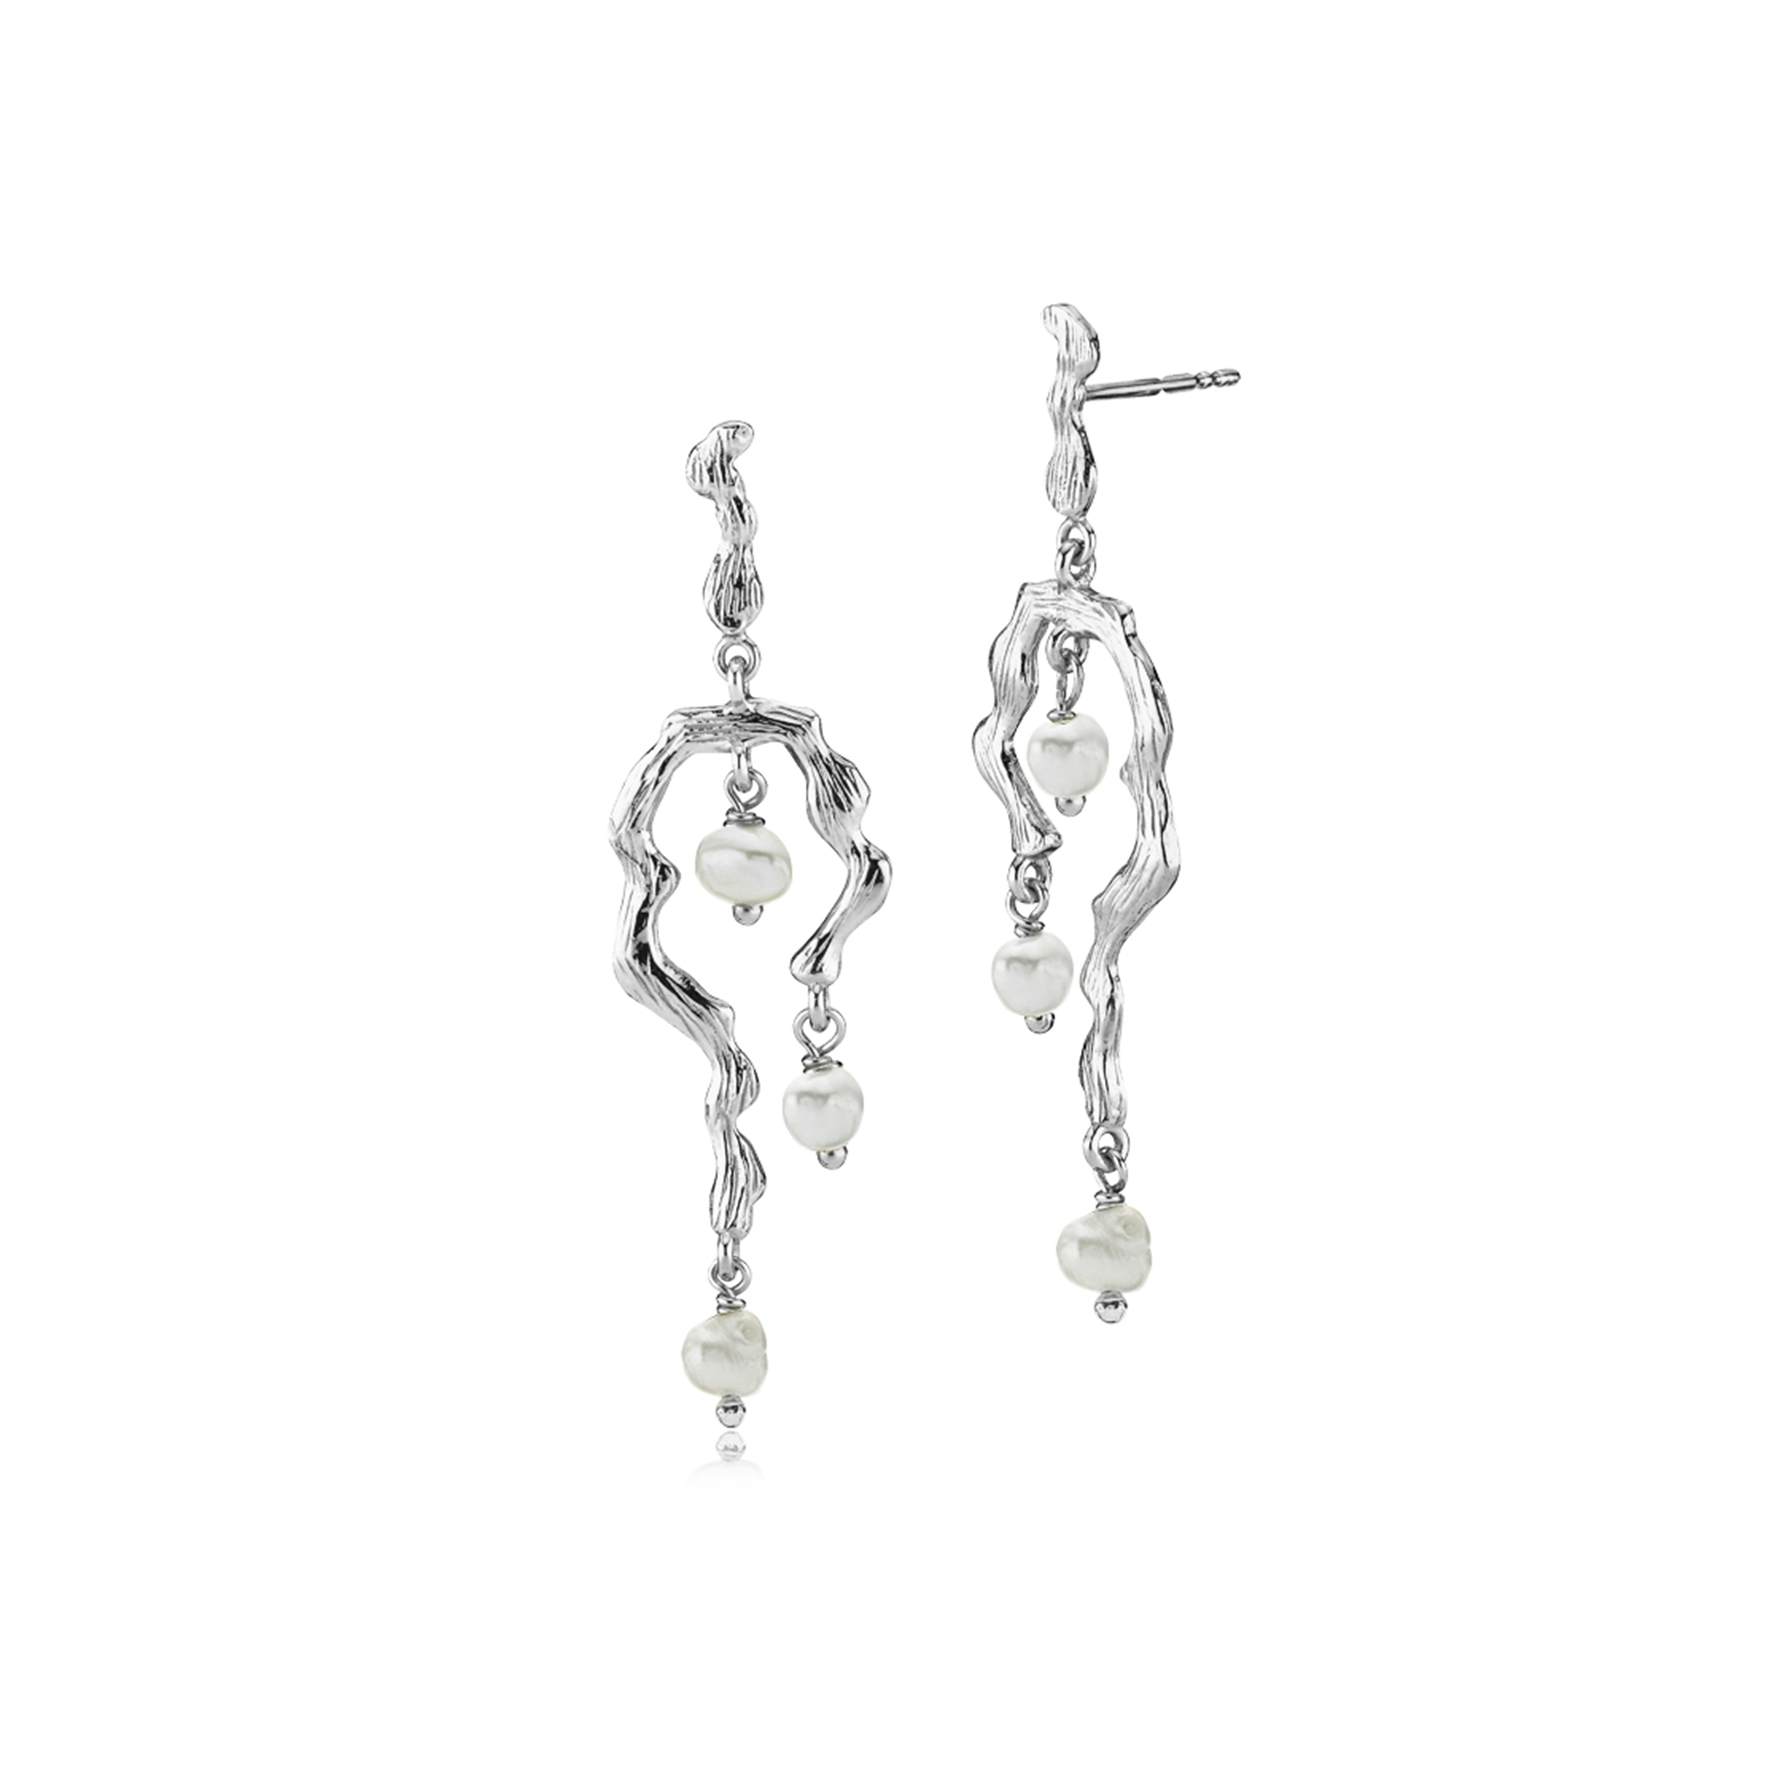 Lærke Bentsen By Sistie Long Earrings With Pearls fra Sistie i Sølv Sterling 925